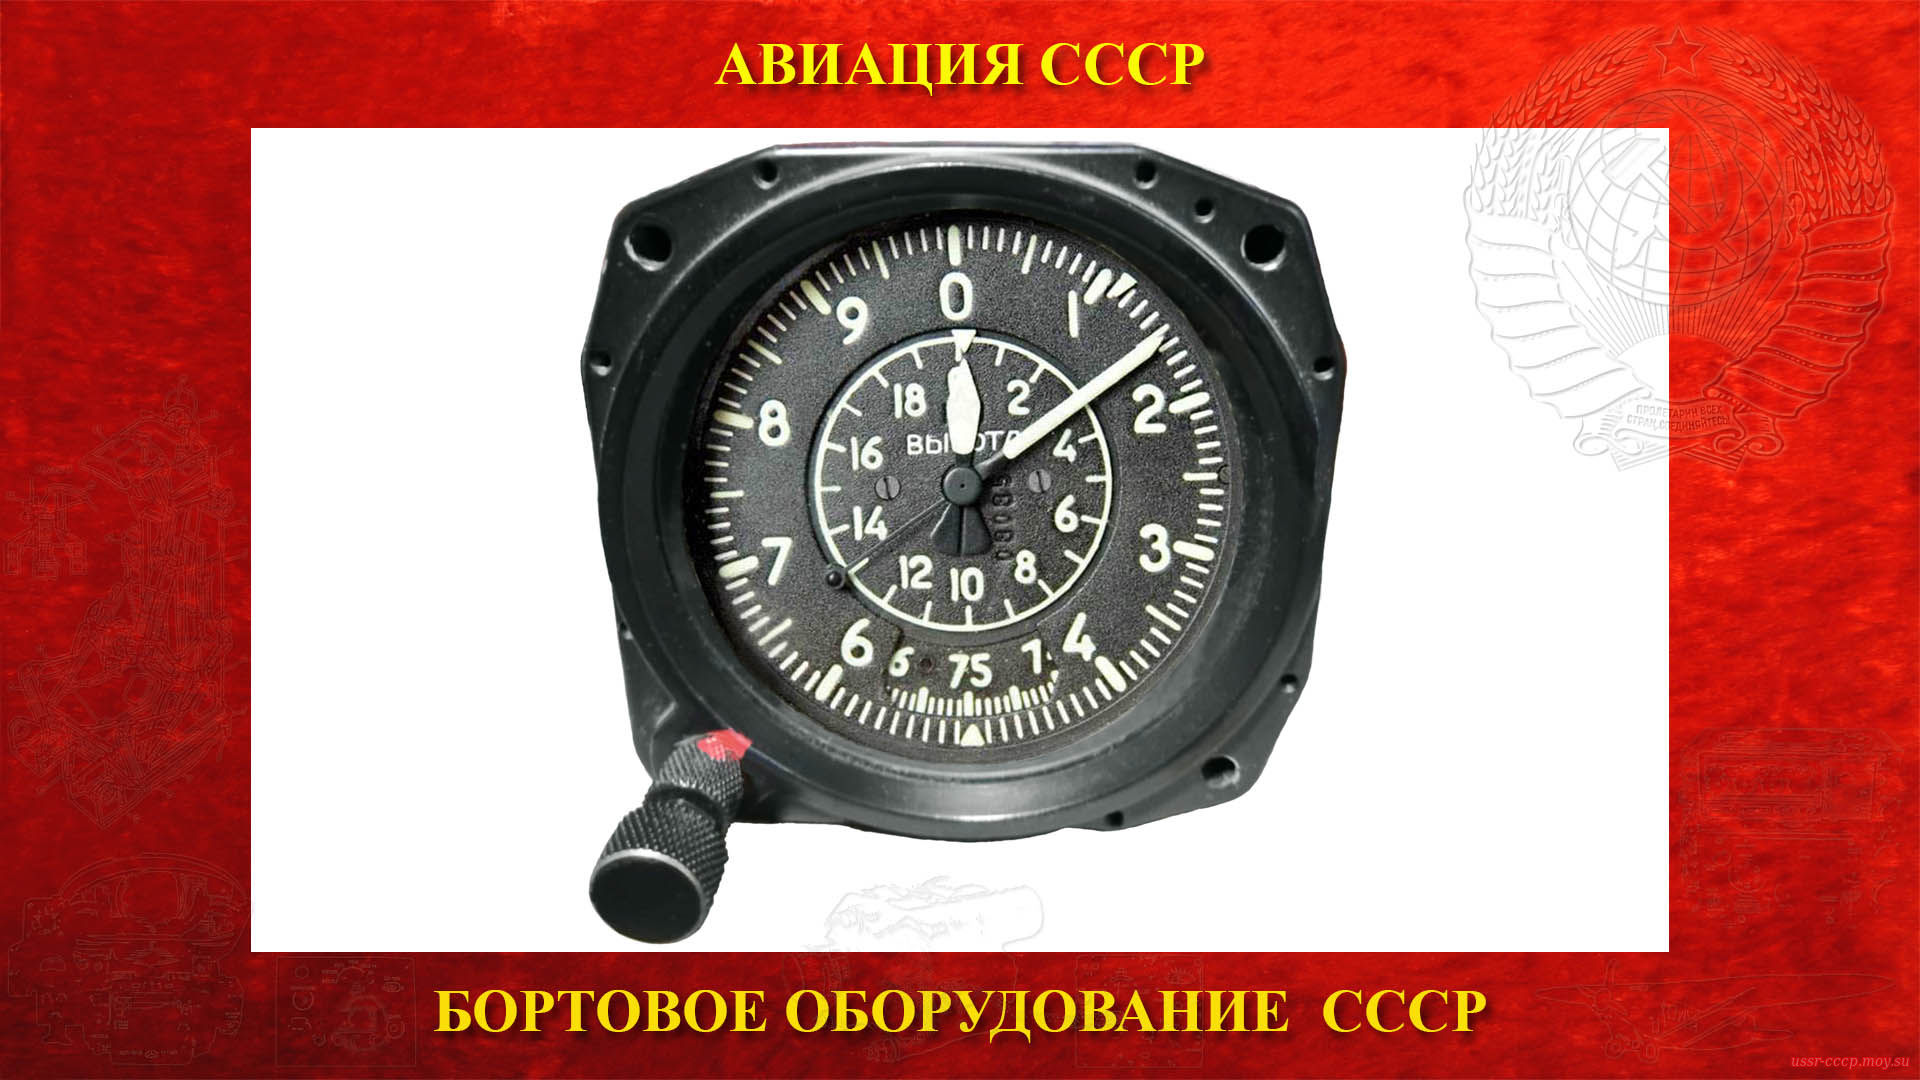 ВД-20 — Высотомер барометрический СССР — Указатель высоты полёта